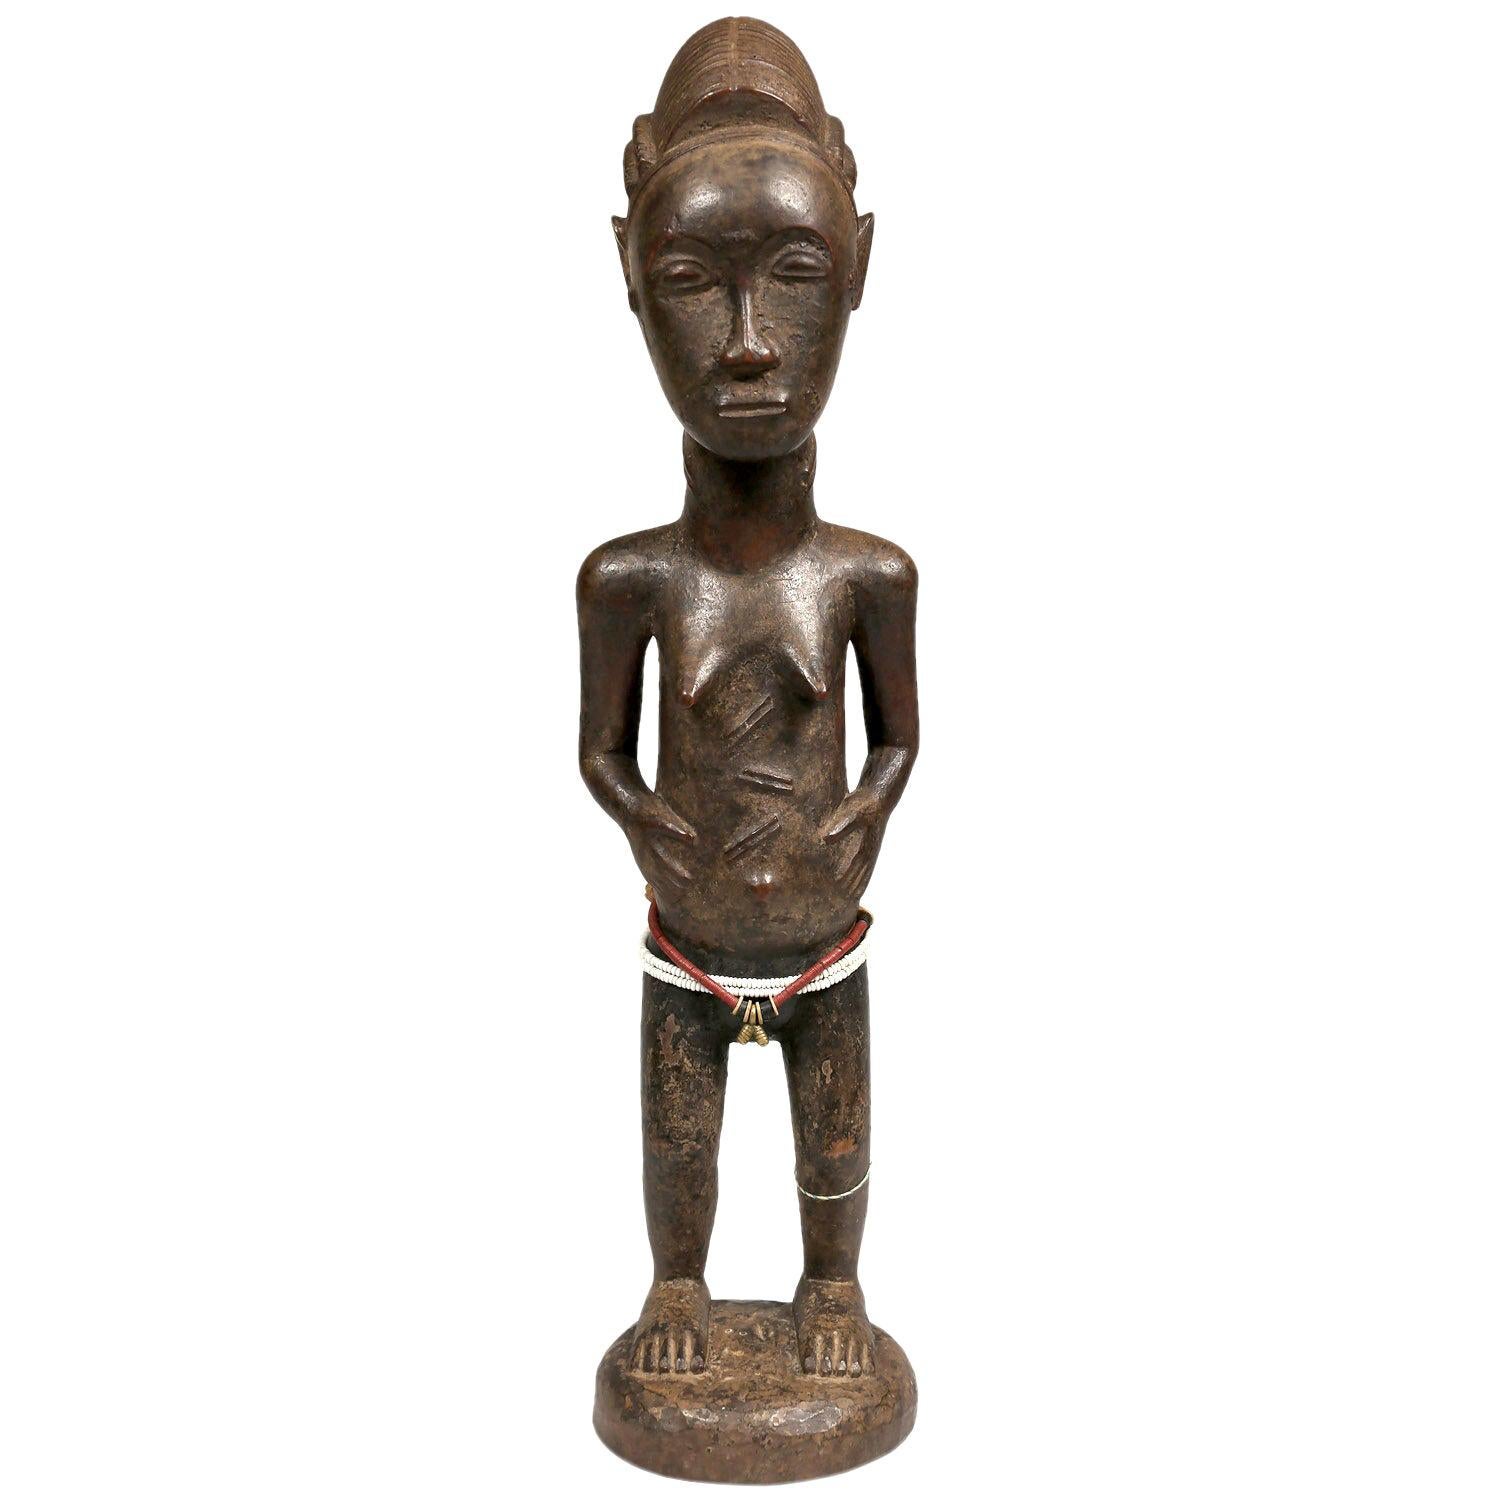 1st Half 20th Century Female Baule Figure, Ivory Coast, Africa